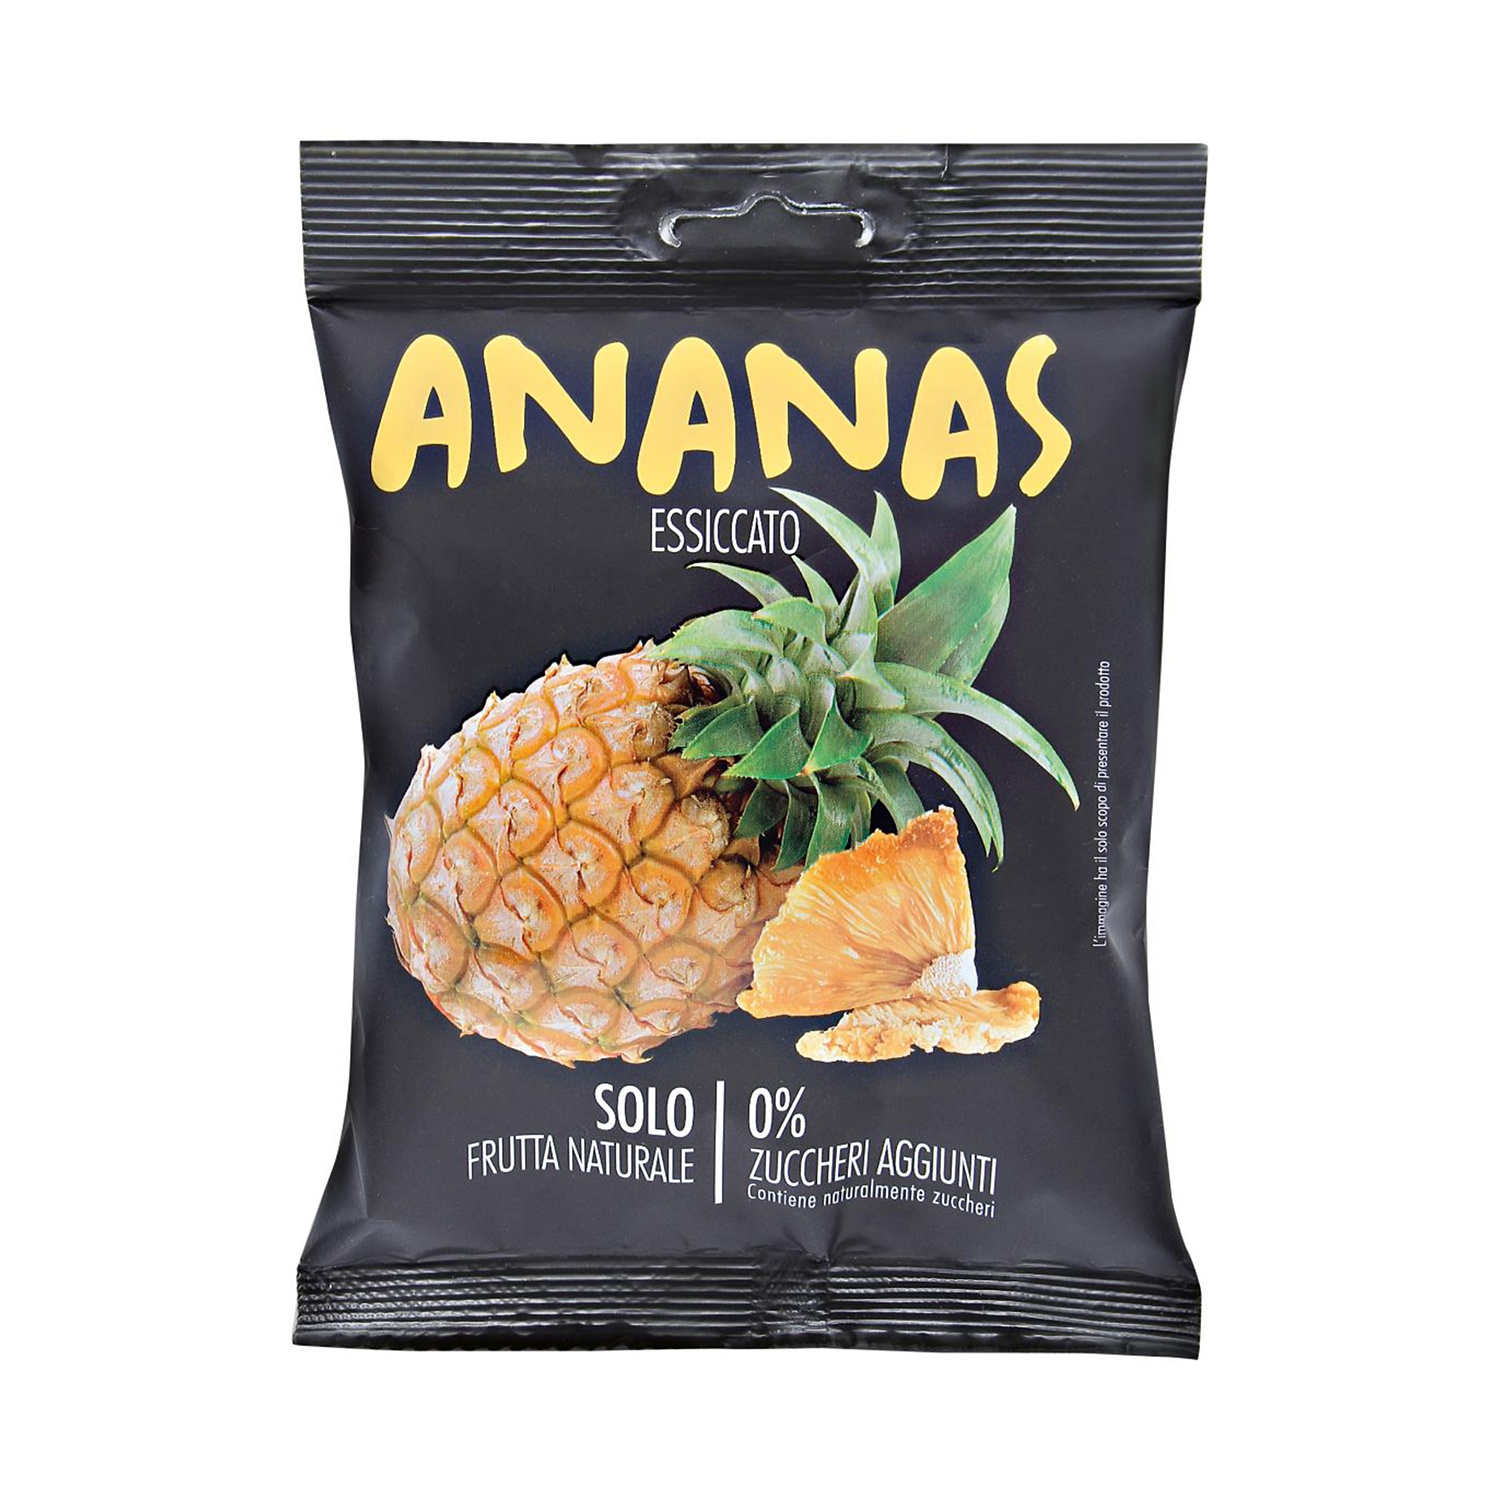 Ananas essiccato